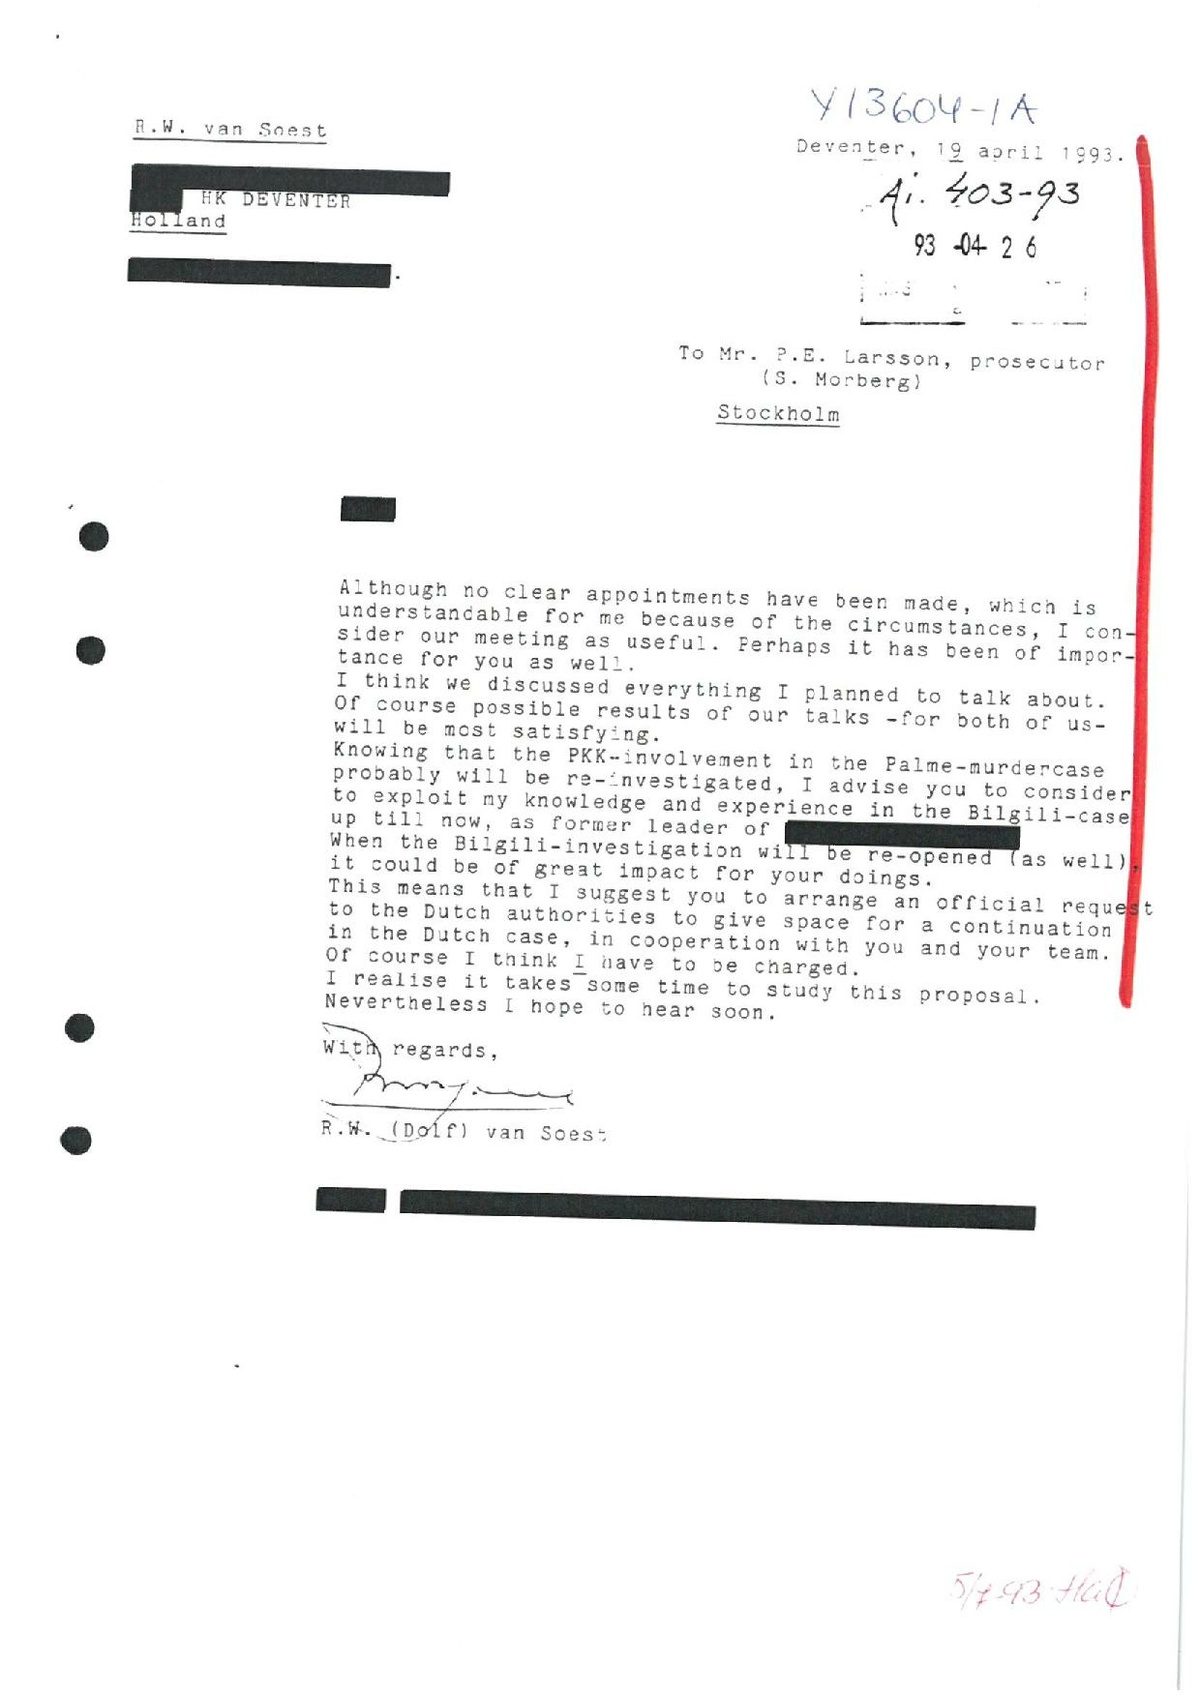 Pol-1989-04-19 Y13604-01-A Uppslag Mahmut Bilgili - Kontakter med Dolf von Soest.pdf